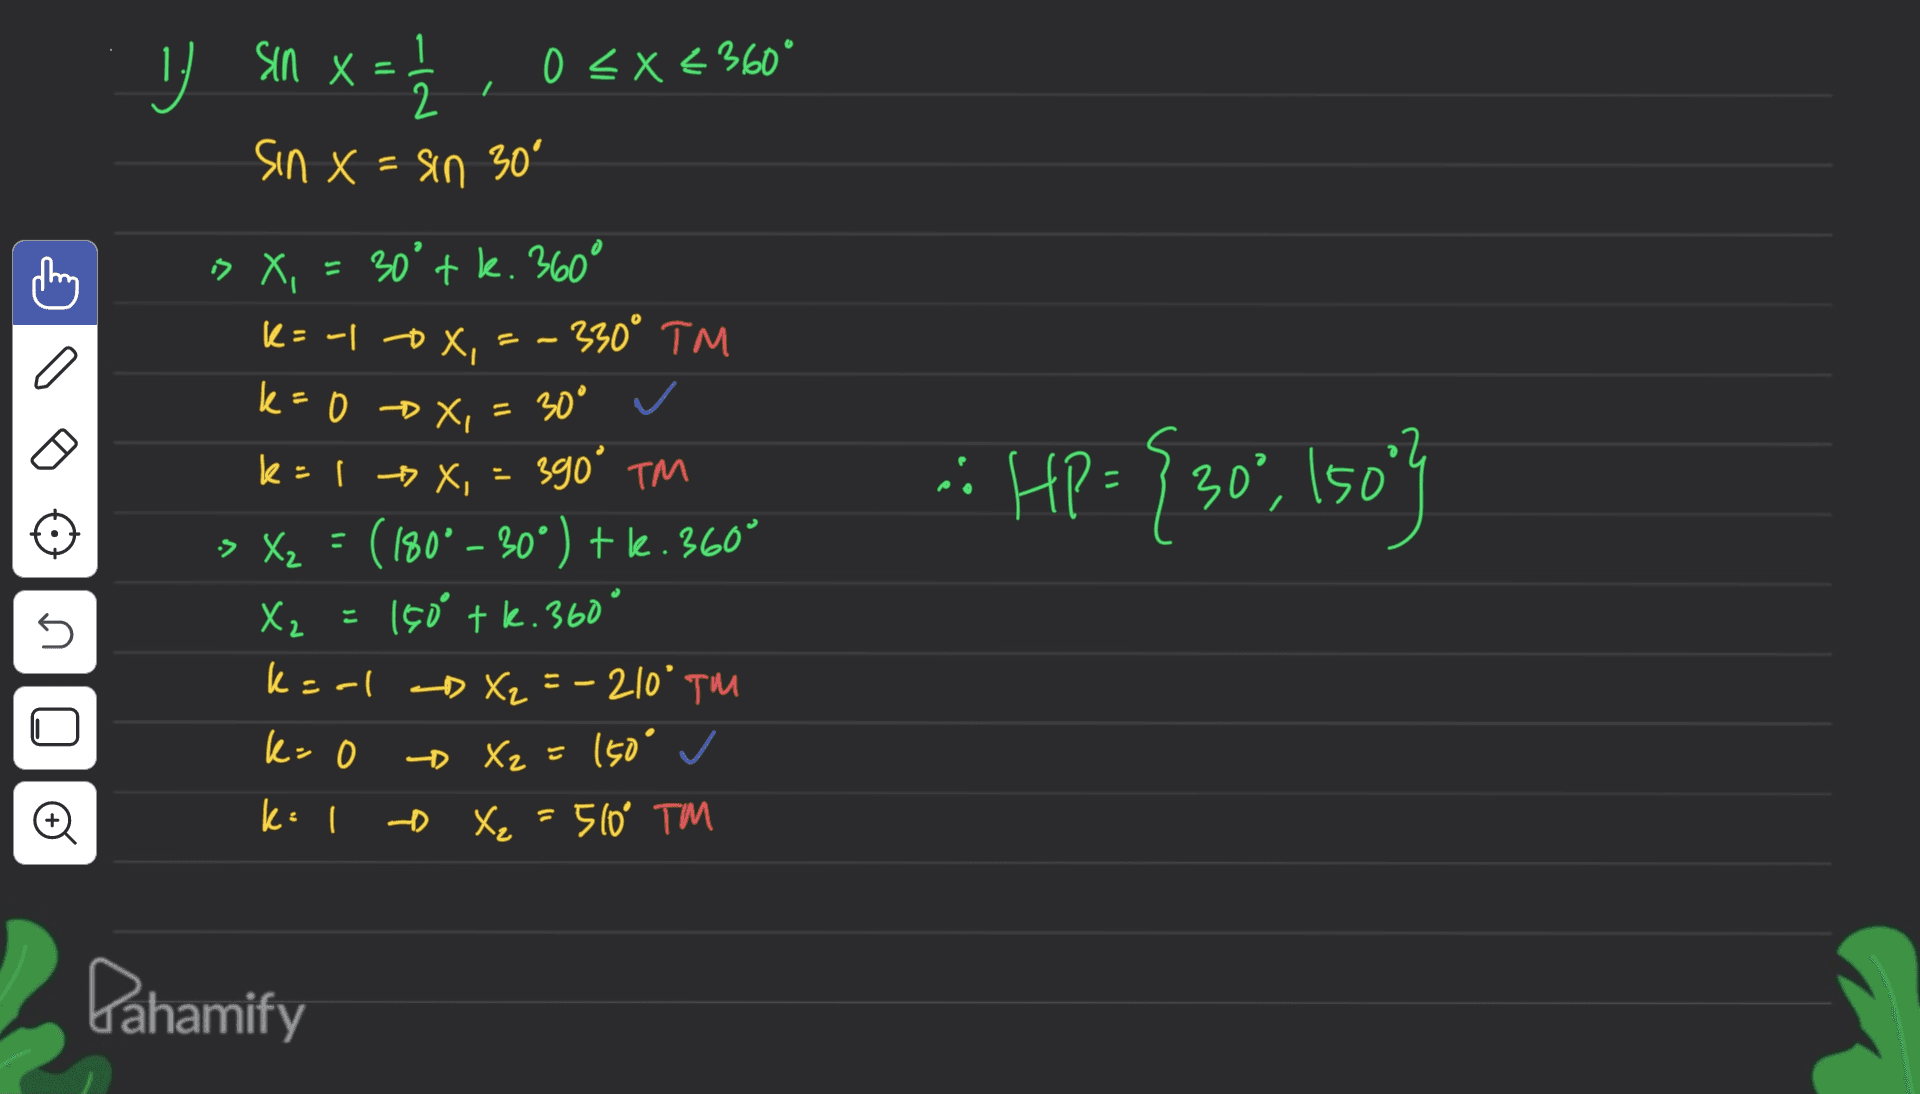 sin x = 0 < x < 360° 2 sin x = sin 30° 'x « 30°tk. 360° k= -1 ox - 330° TM a k= »4, :: HP = {30", Iso"} k=0 x, = 30° ✓ 390° TM > X2 = (180° - 30°) + le.360° X₂ = 150 tk. 360 ° k=al D X₂ = -210° TM k=0 - Xz = 150° ✓ k=1 - X₂ X₂ = 510° TM s Đ Dahamify 